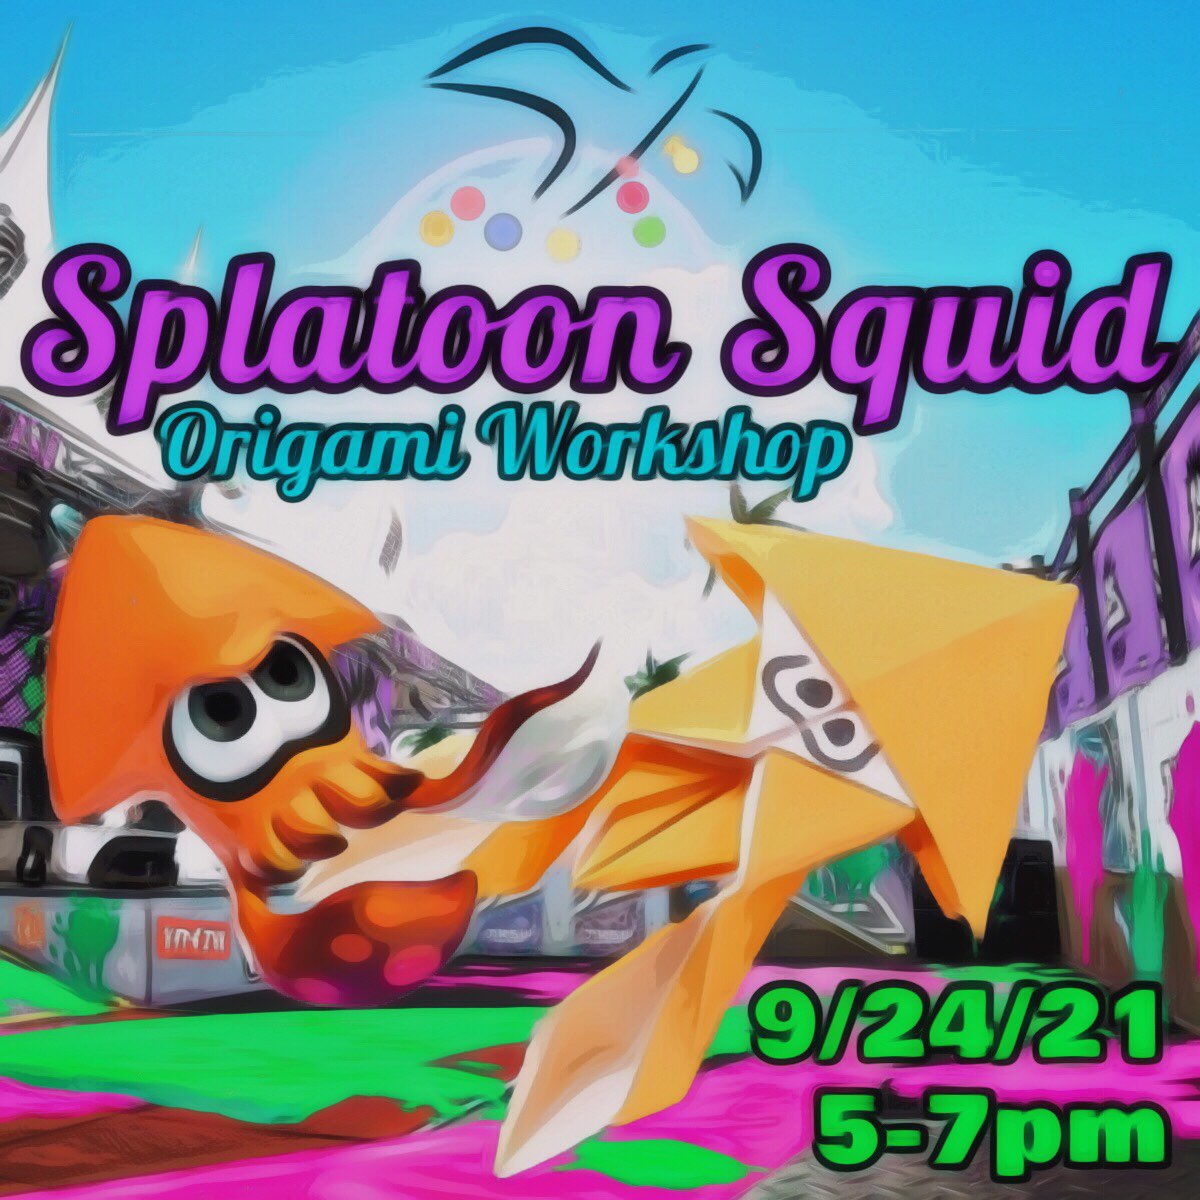 September Splatoon Squids Workshop!!! くコ:彡 ￼